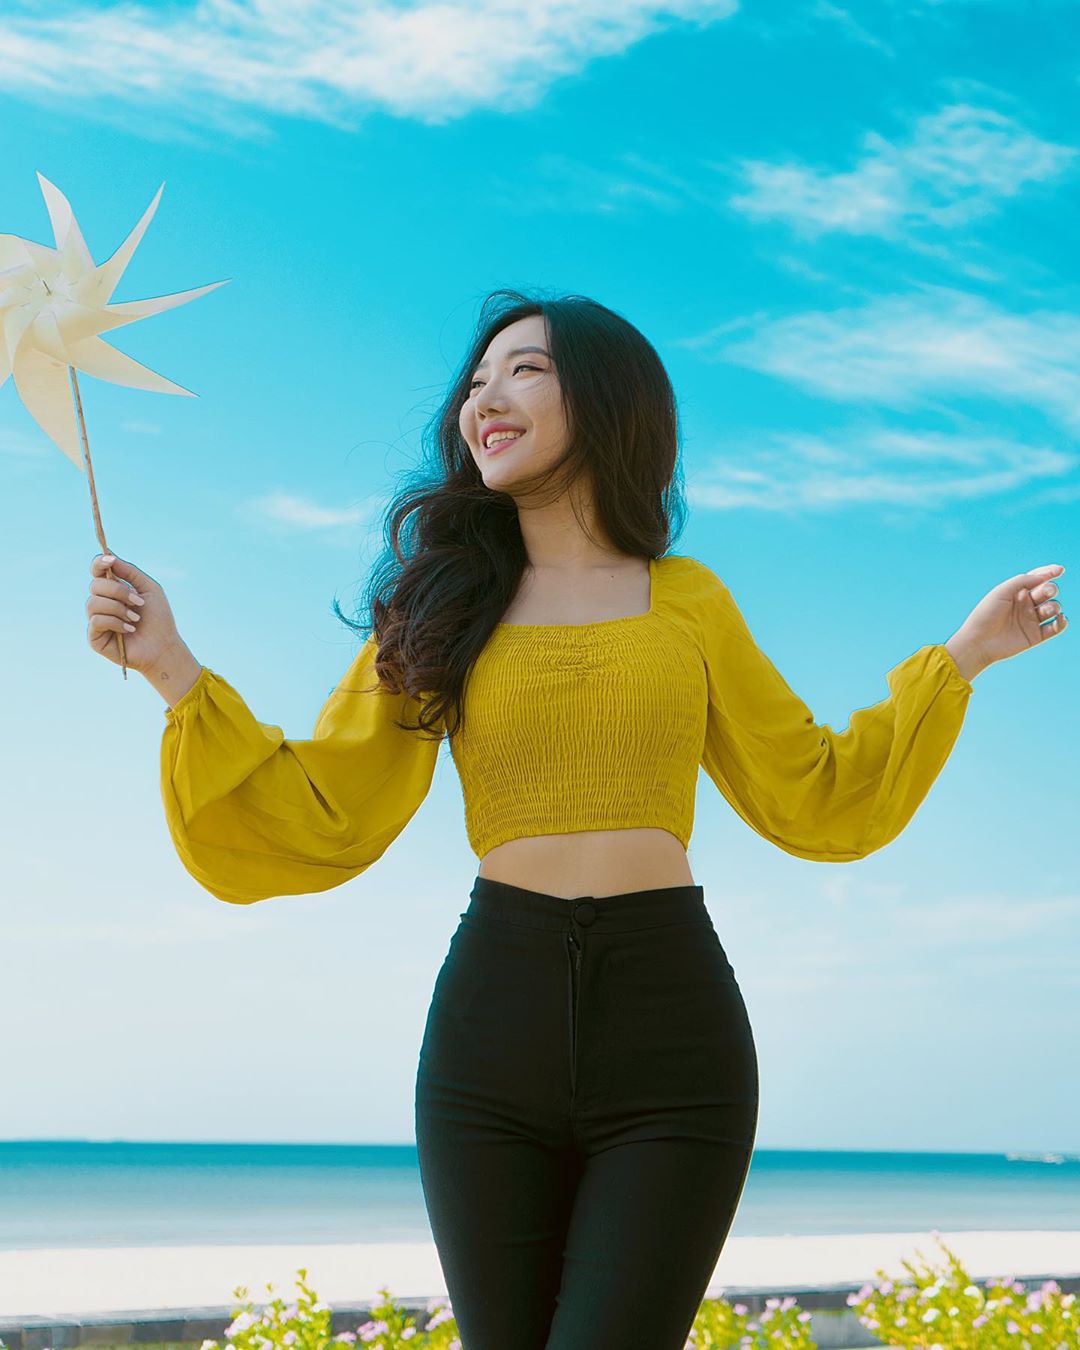 Hsu Eaint San, gente en la naturaleza, amarillo, sonrisa: chicas de instagram  